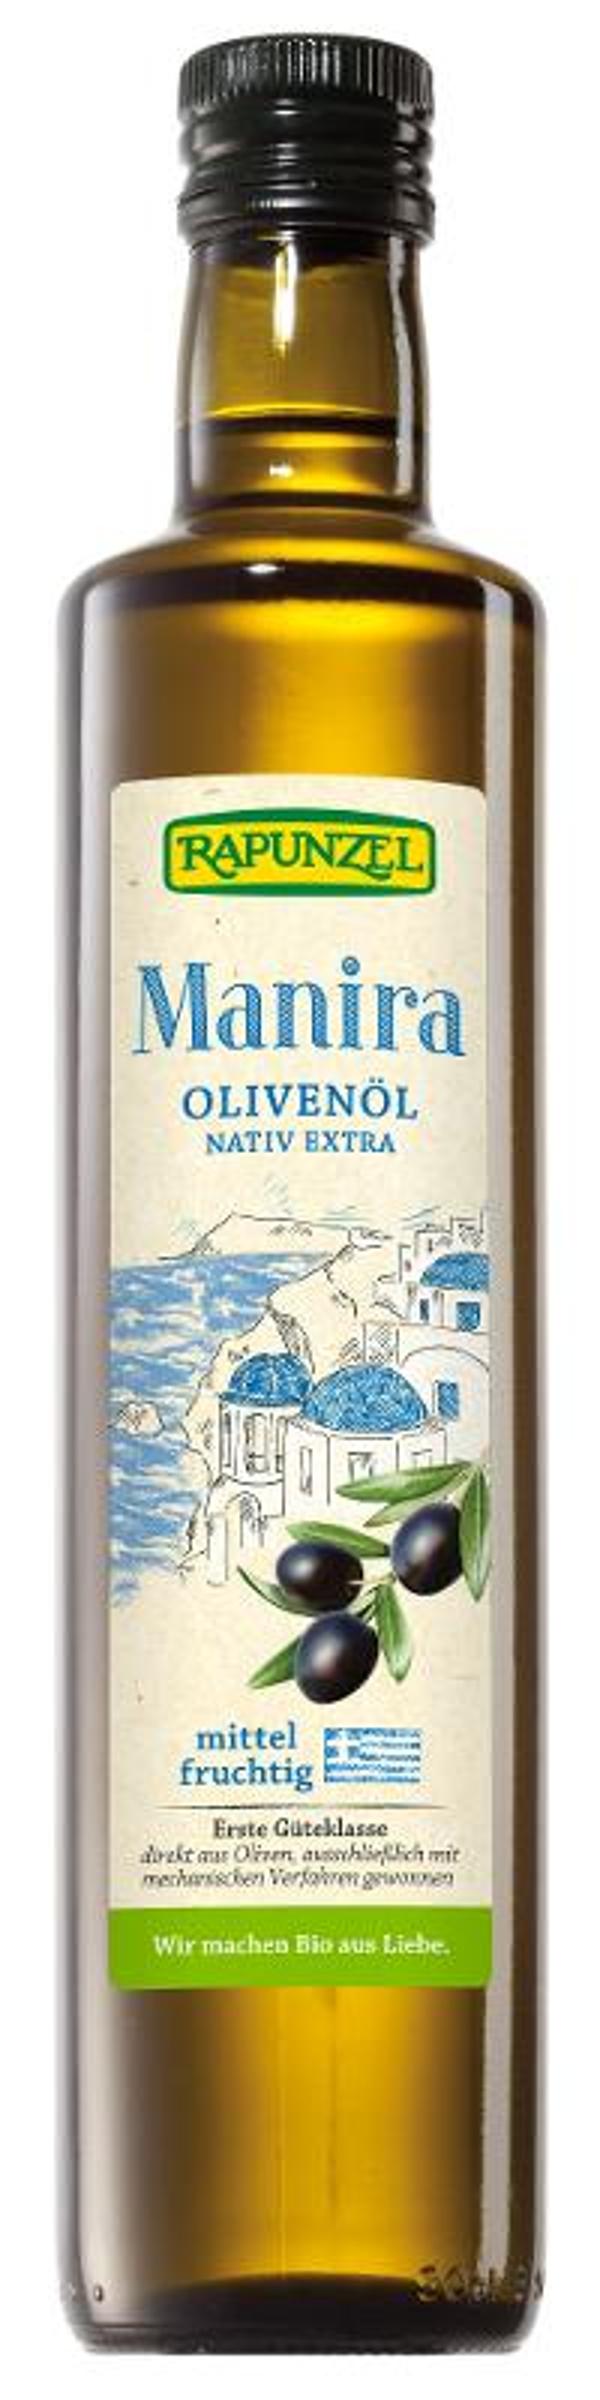 Produktfoto zu Olivenöl Manira RAP